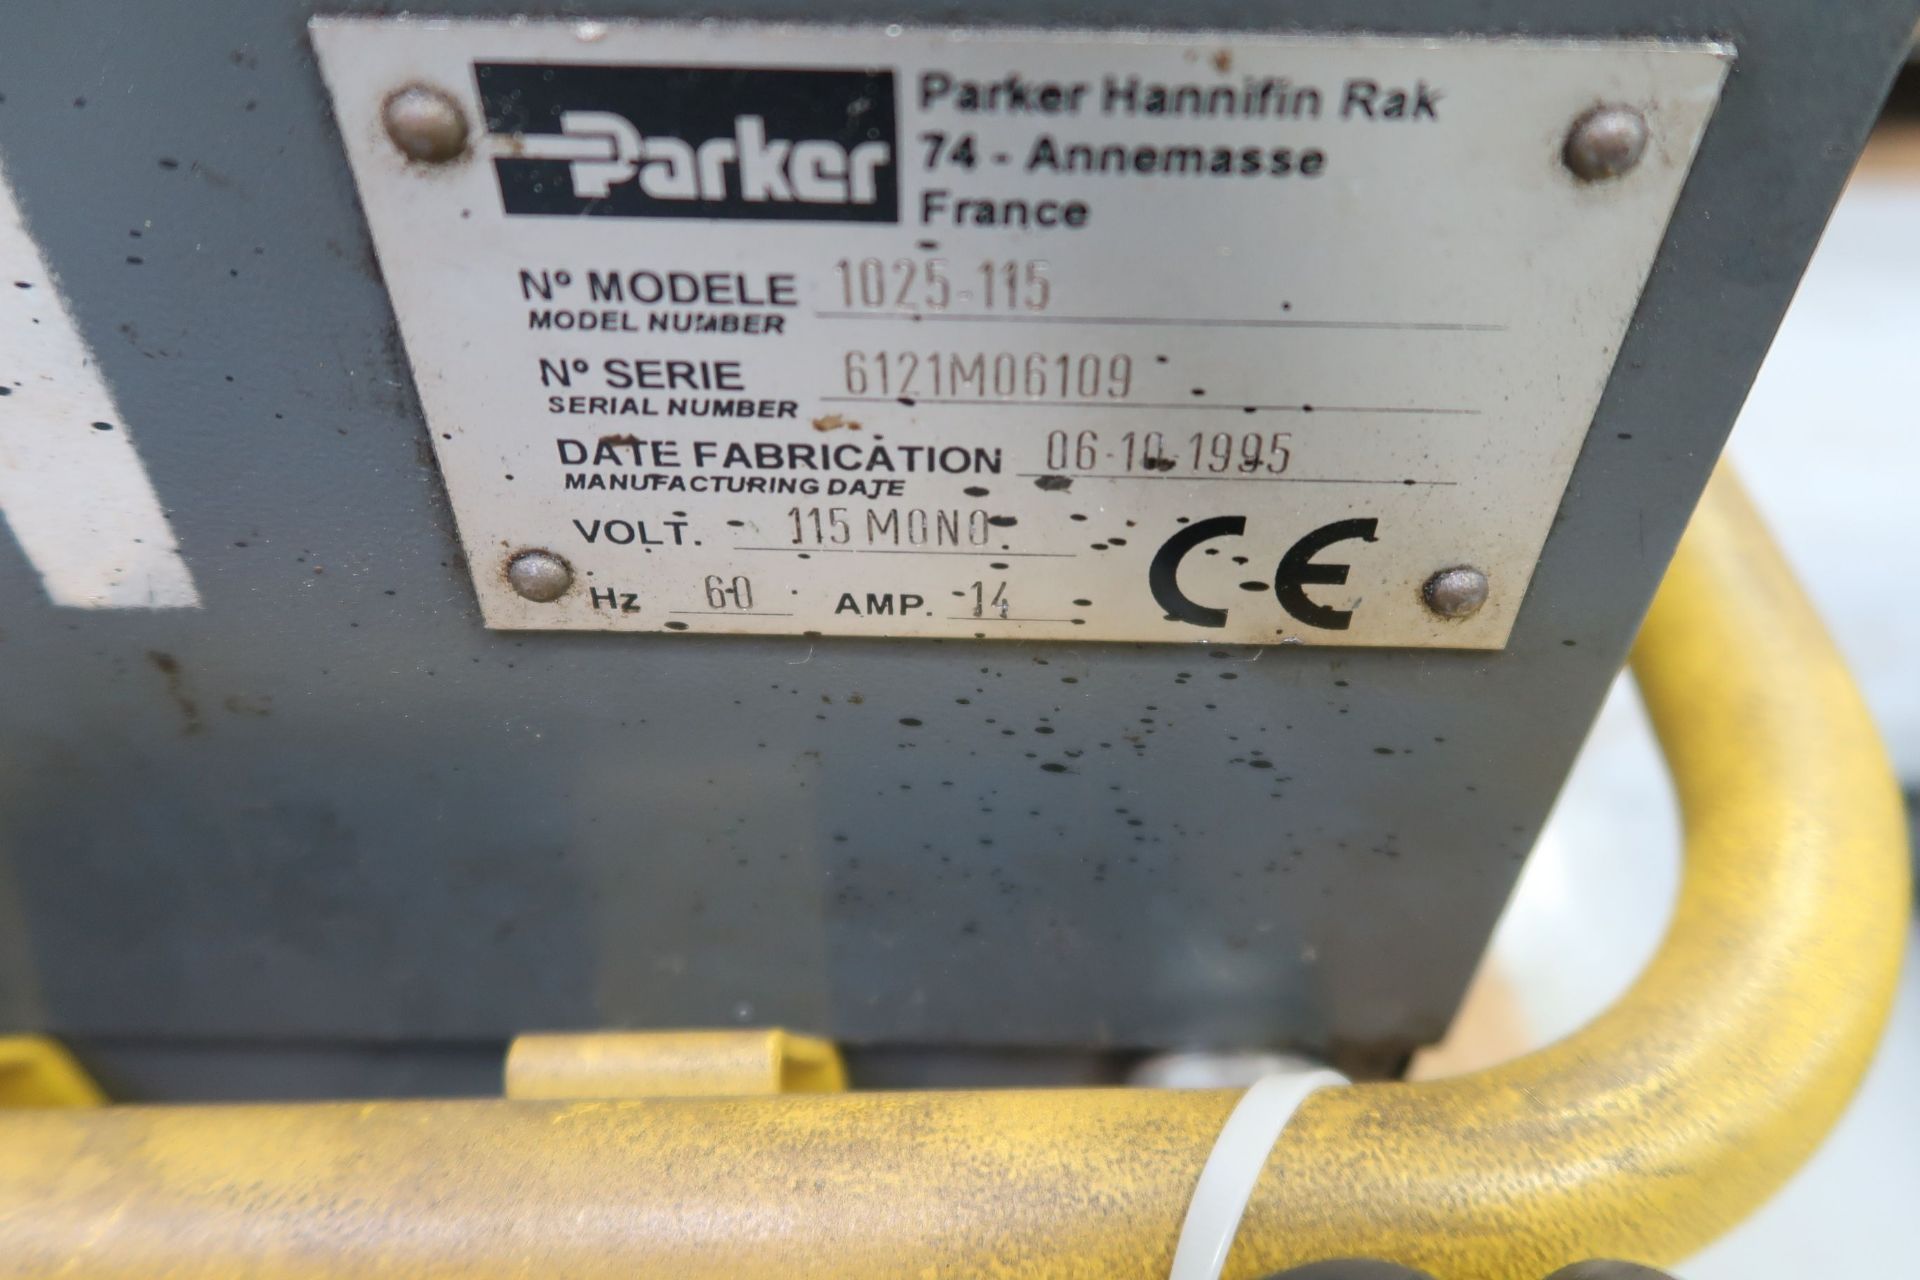 PARKER MODEL PARFLANGE 1025-115 FLANGE MACHINE; S/N 6121M06109, 115 VOLT - Image 4 of 4